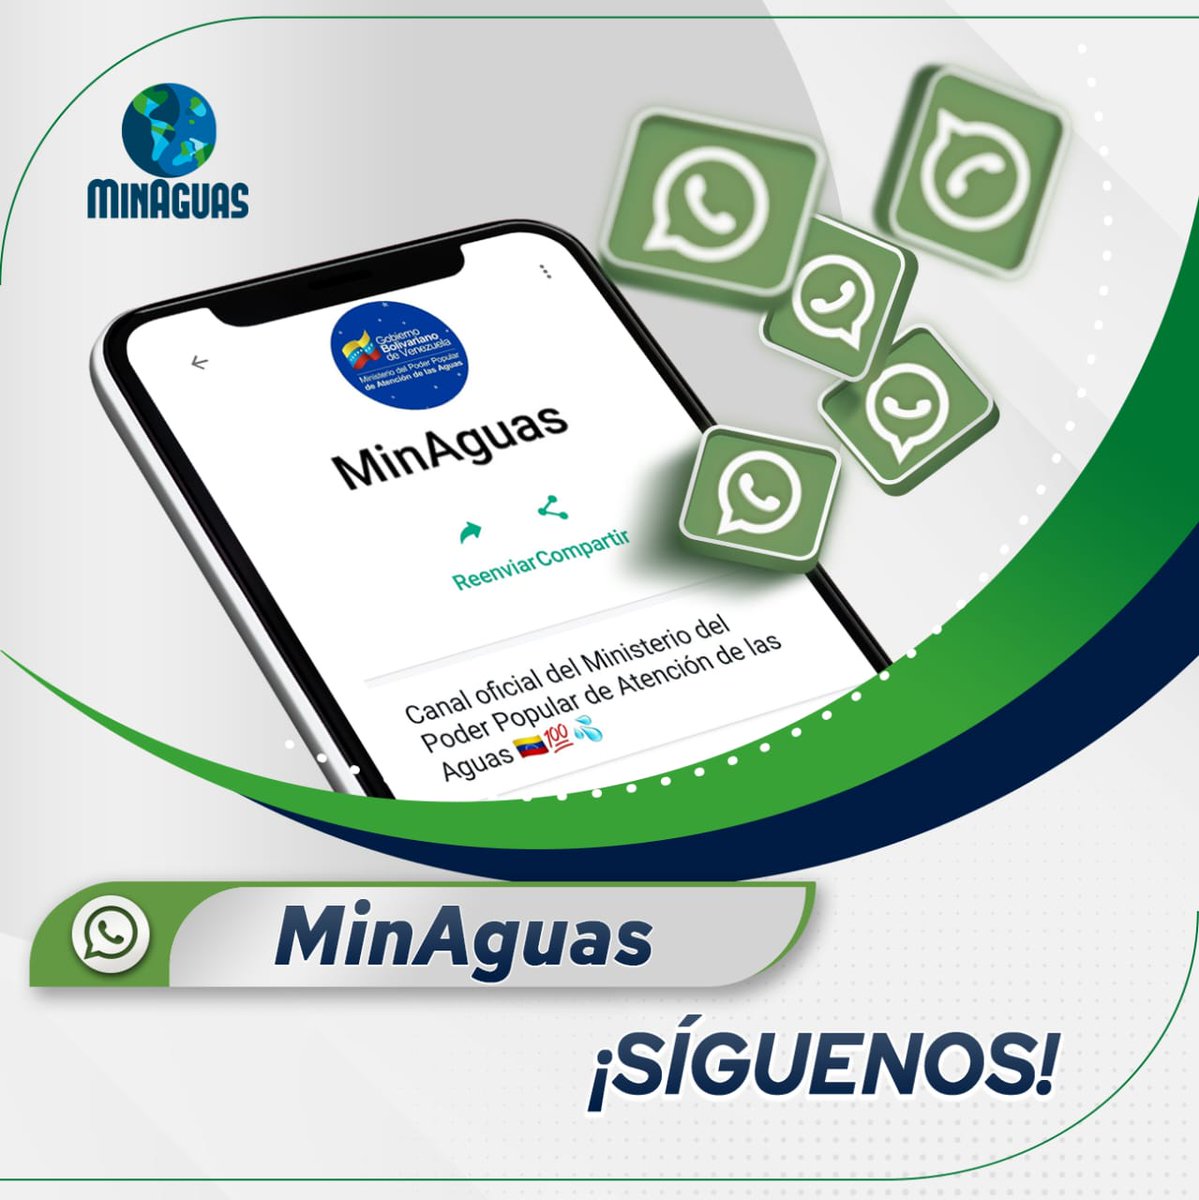 Sigue nuestro canal de #MinAguas en WhatsApp siguiendo el enlace:    

bitly.ws/38zxw 

#CadaGotaCuenta